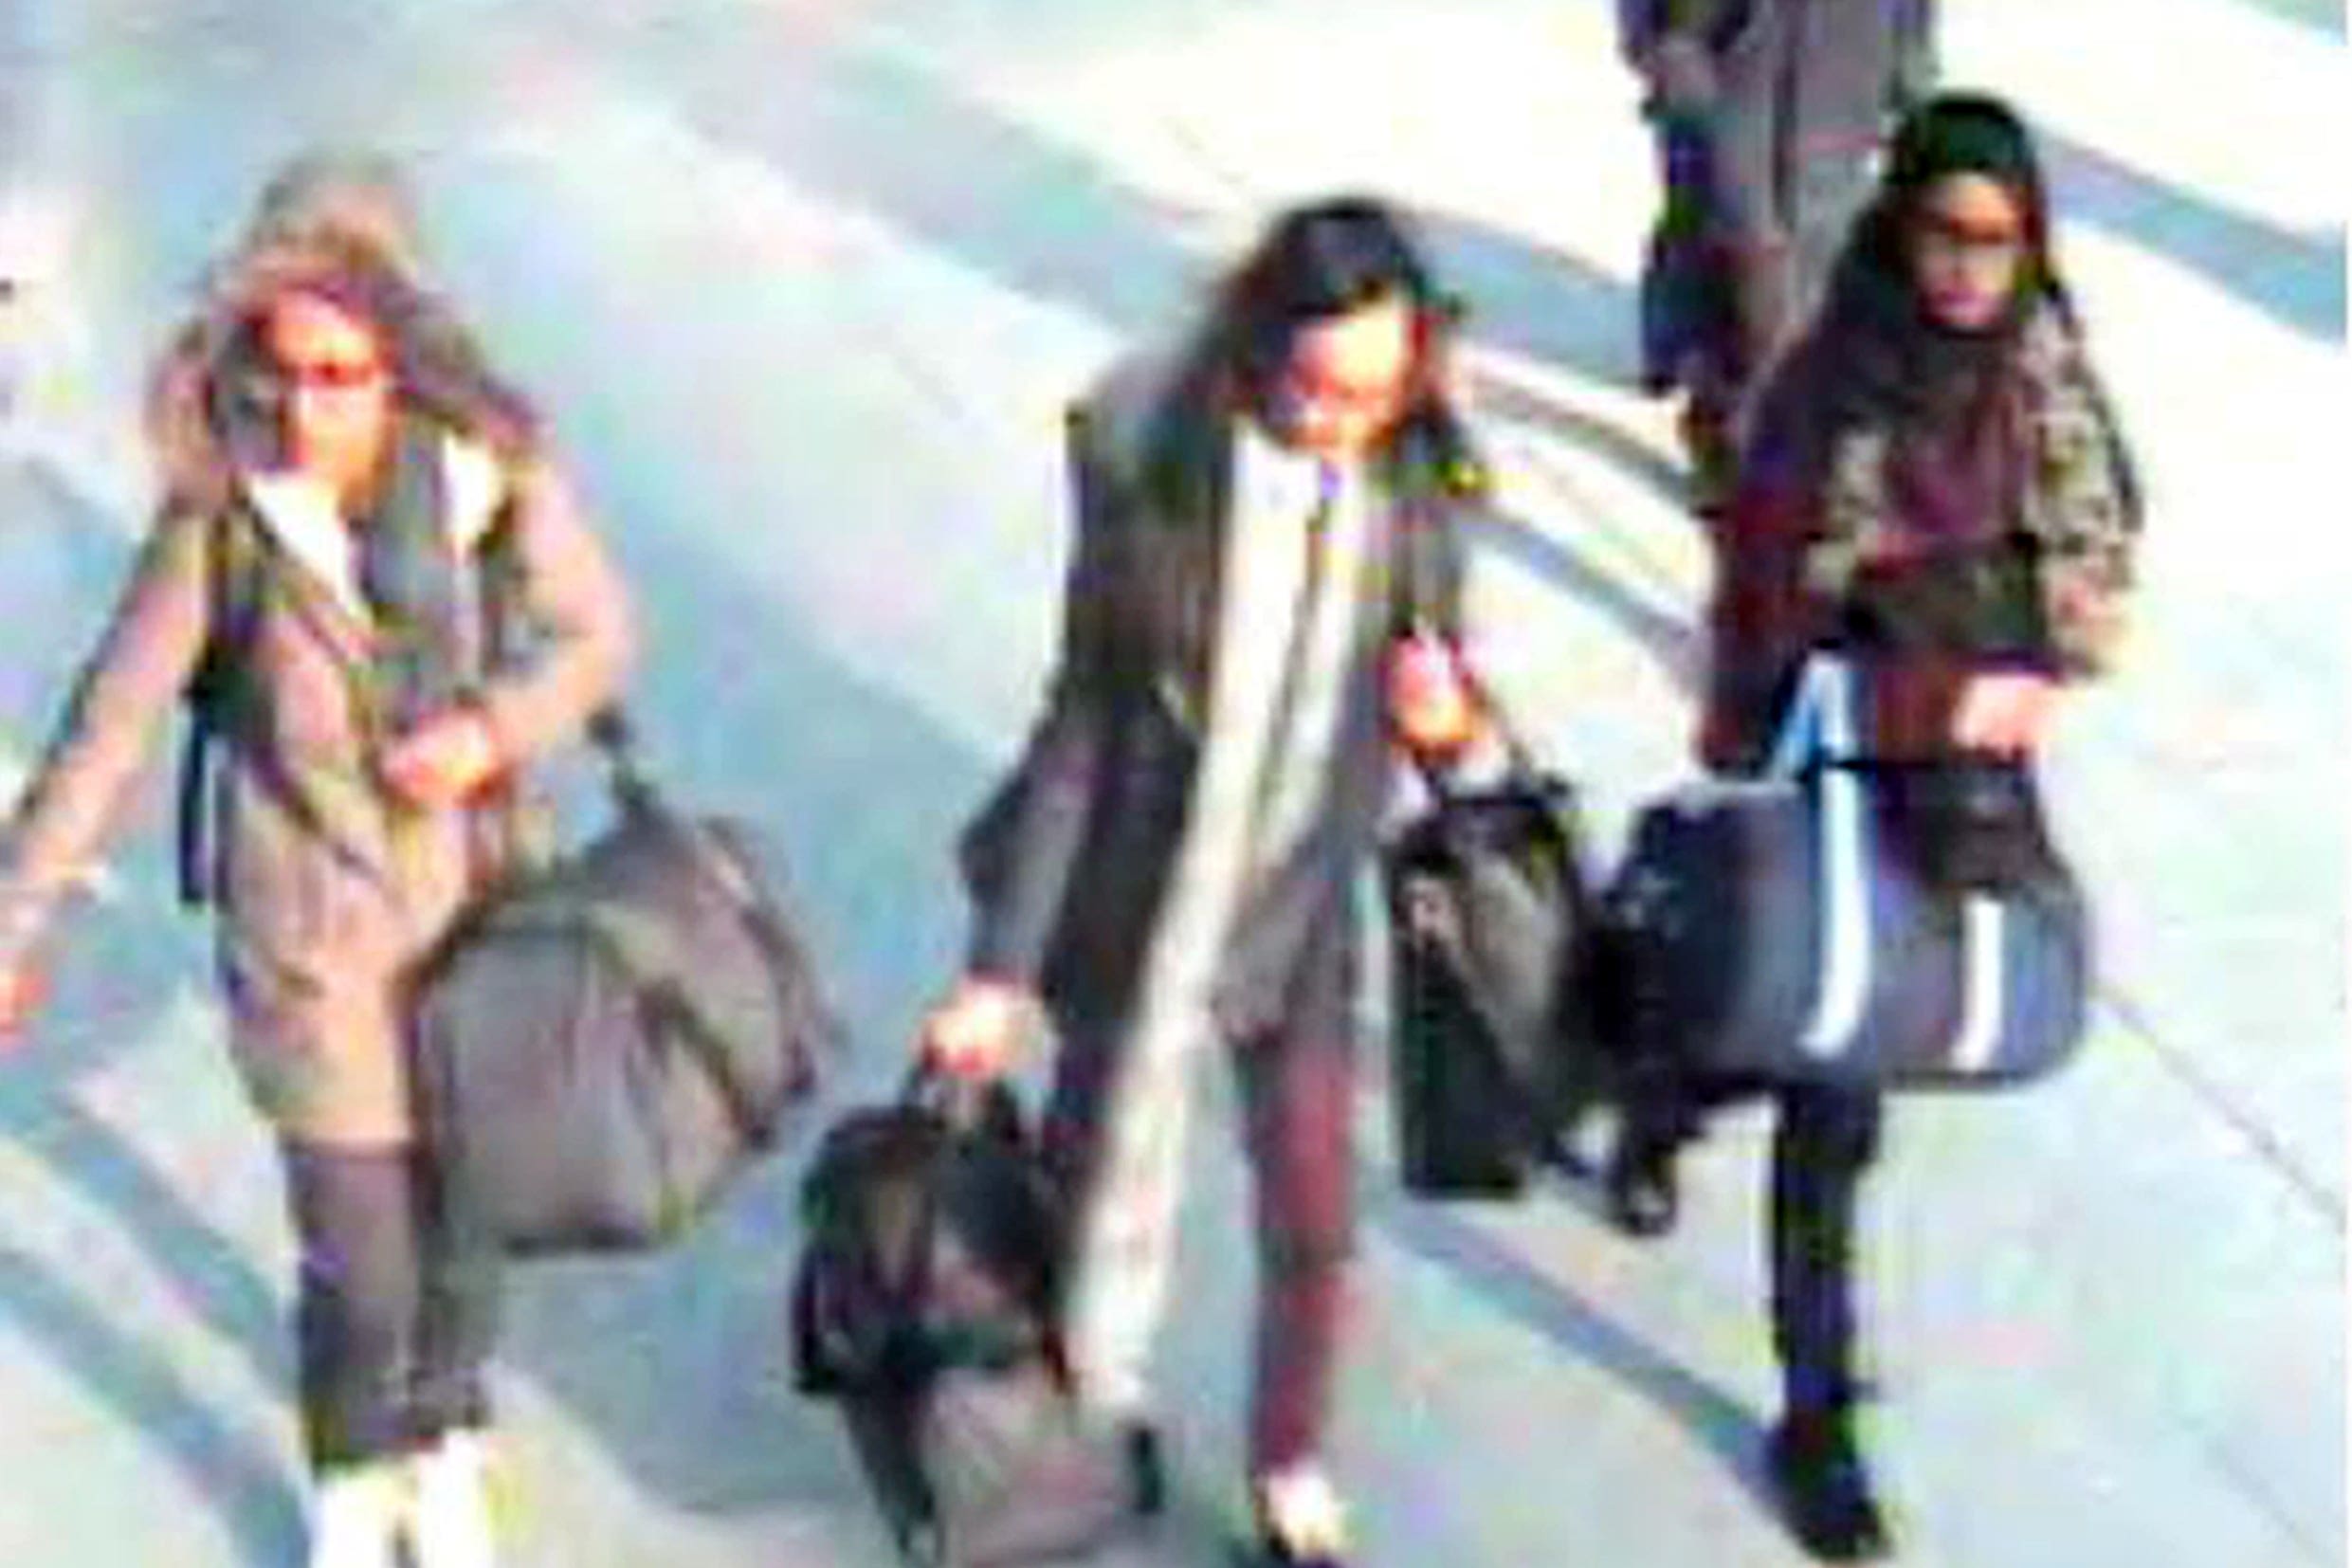 Amira Abase, Kadiza Sultana and Shamima Begum fled the UK in February 2015